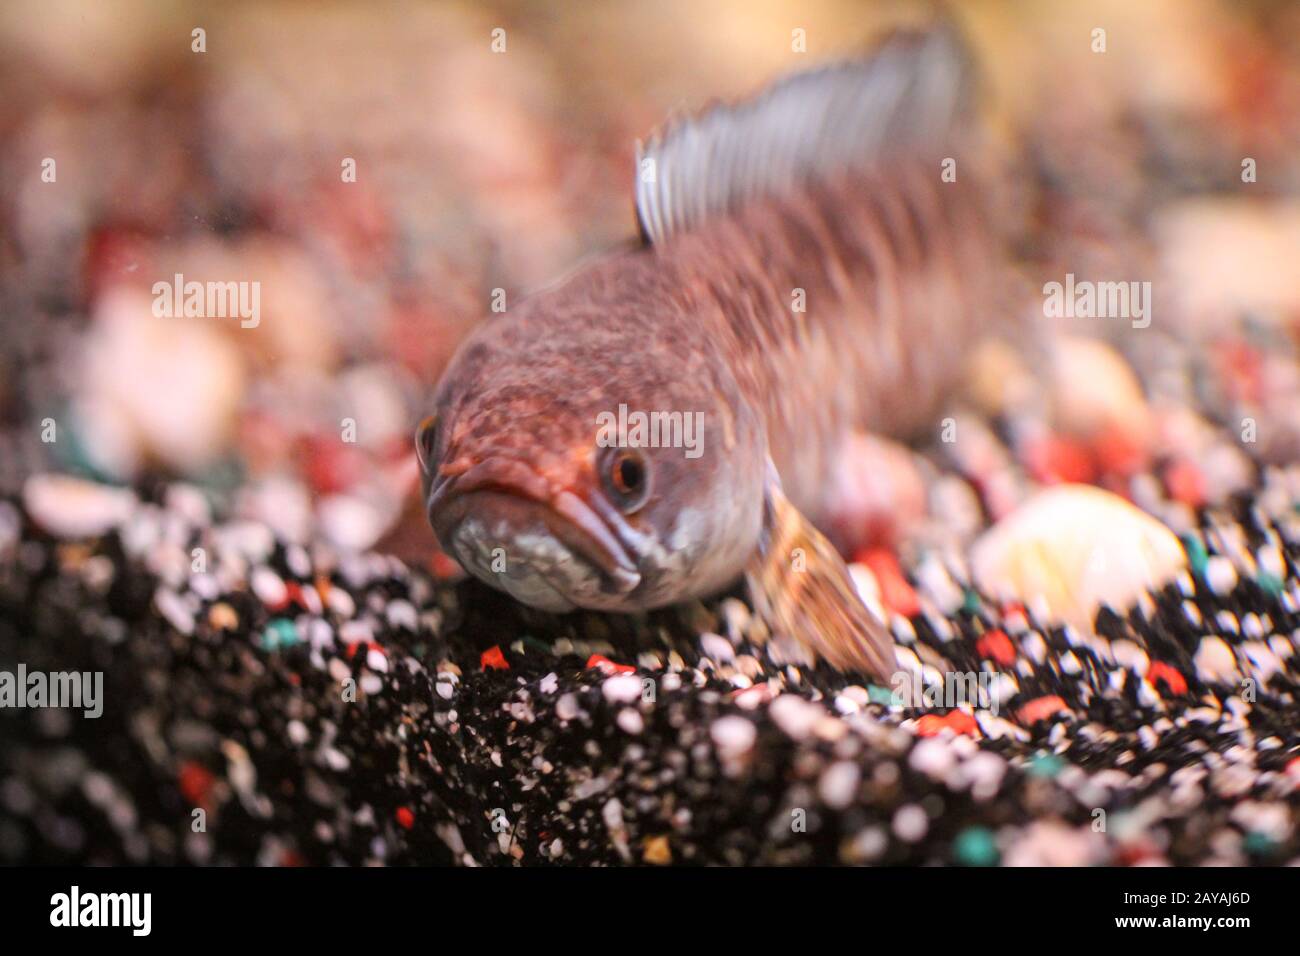 Dettaglio di un fango testa di pesce in acquario Foto Stock